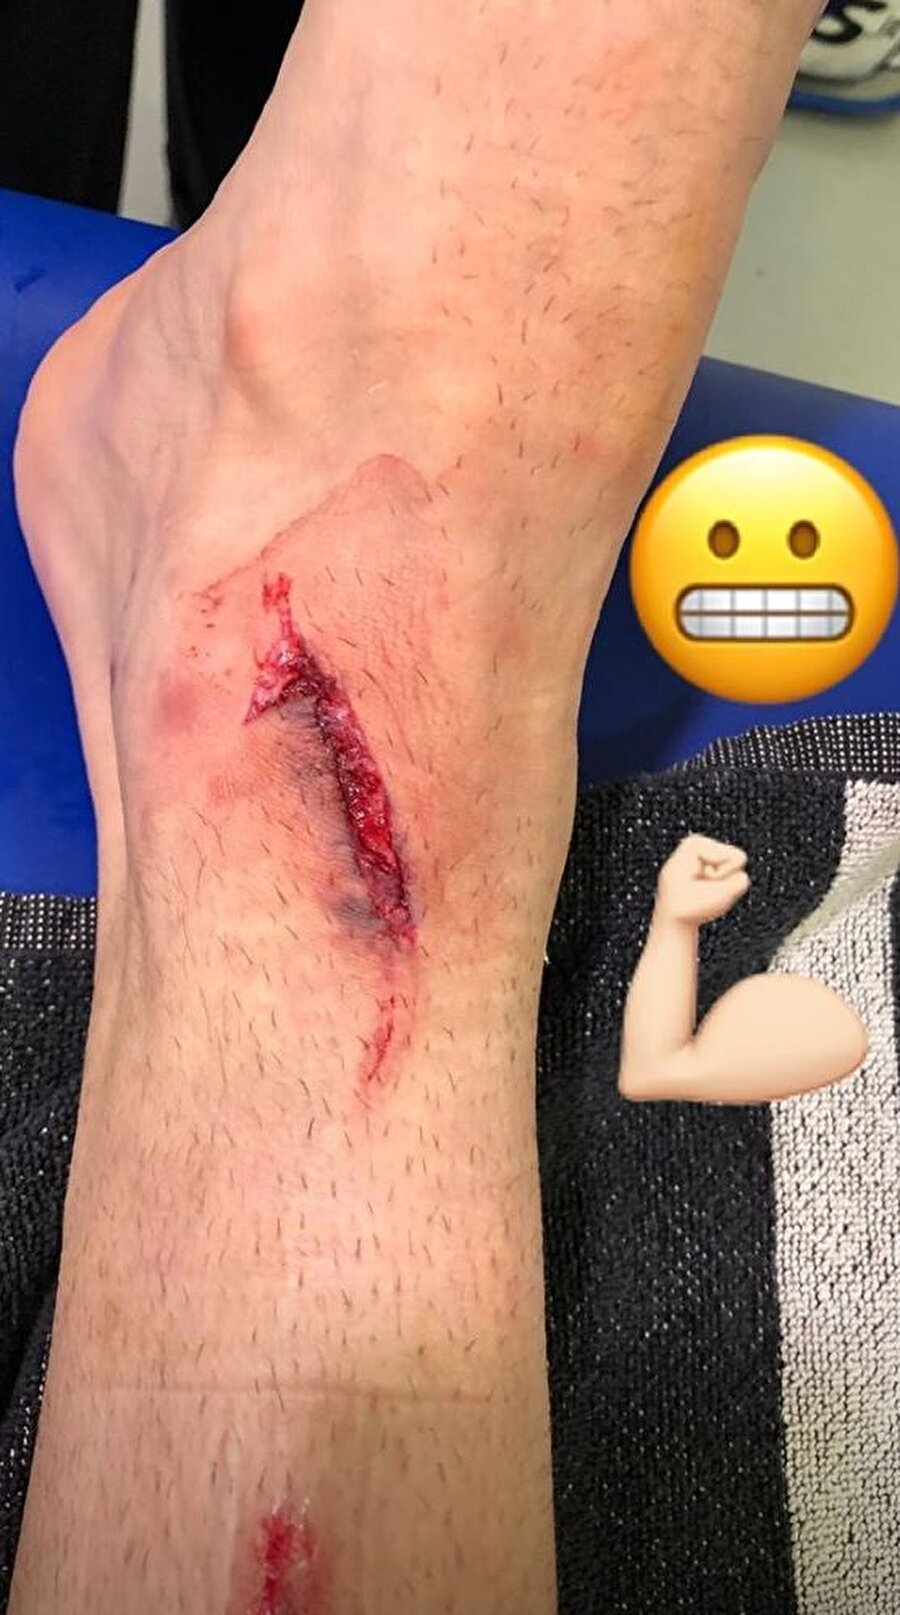 Golcü futbolcu maçtan sonra ayağının son halini sosyal medyadan paylaştı. 